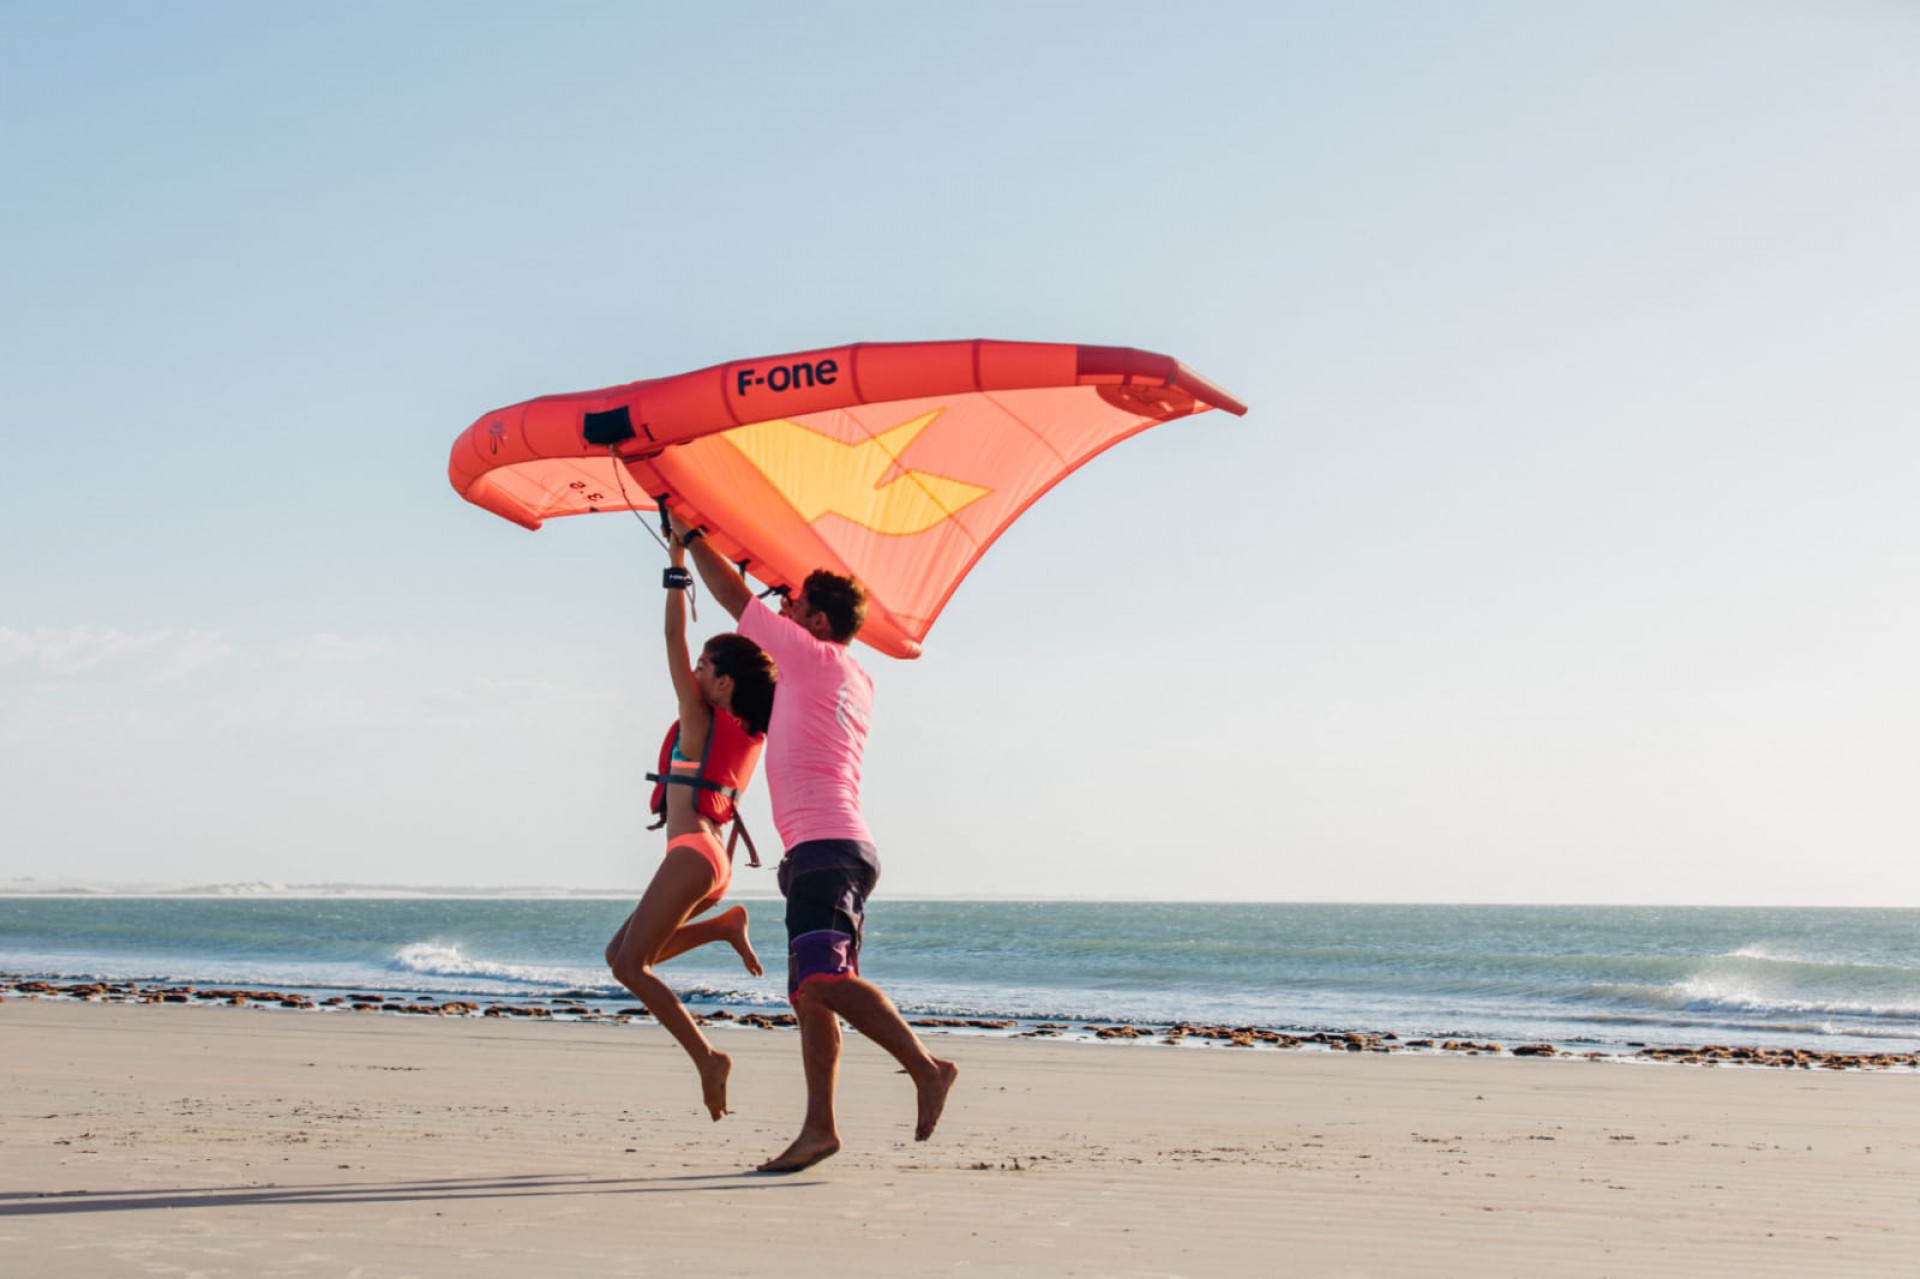 (Foto: Analice Diniz / Divulgação)Aulas de wing foil (wingsurfe) nas areias das praia de Jericoacoara e do Preá, que também recebem windsurfe e kitesurfe. Especial Esportes Náuticos